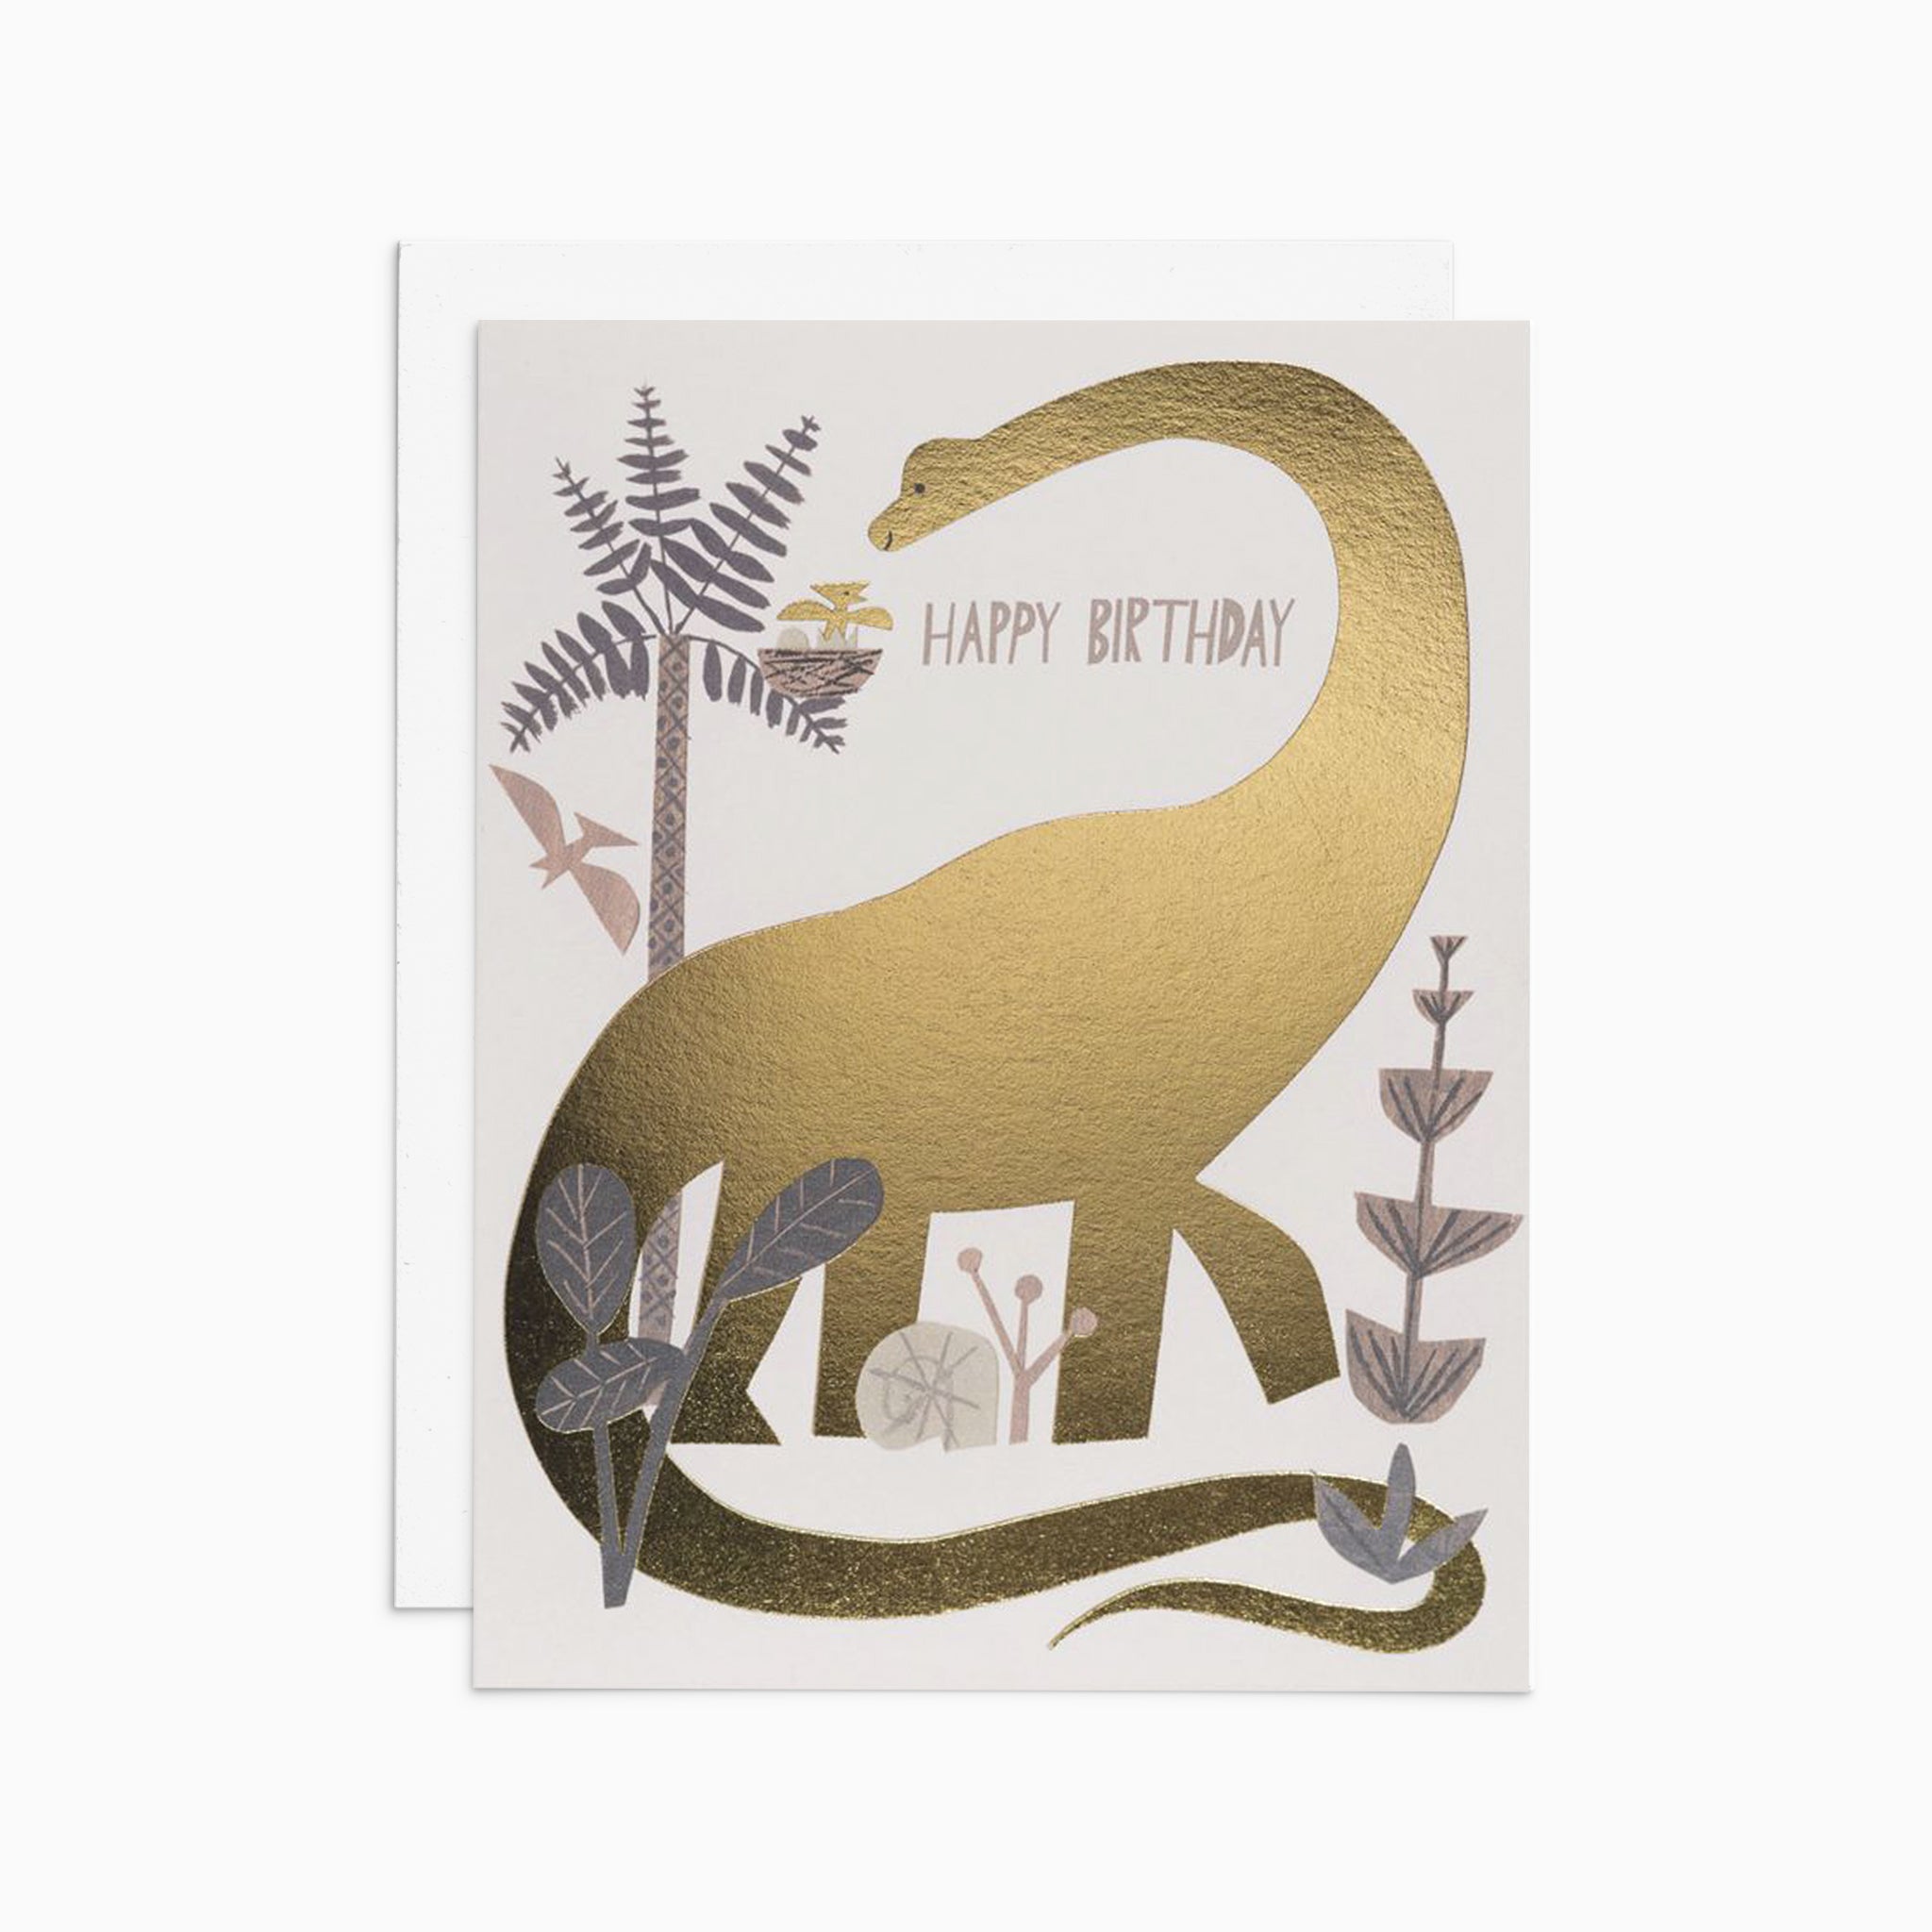 Happy birthday dinosaur Card